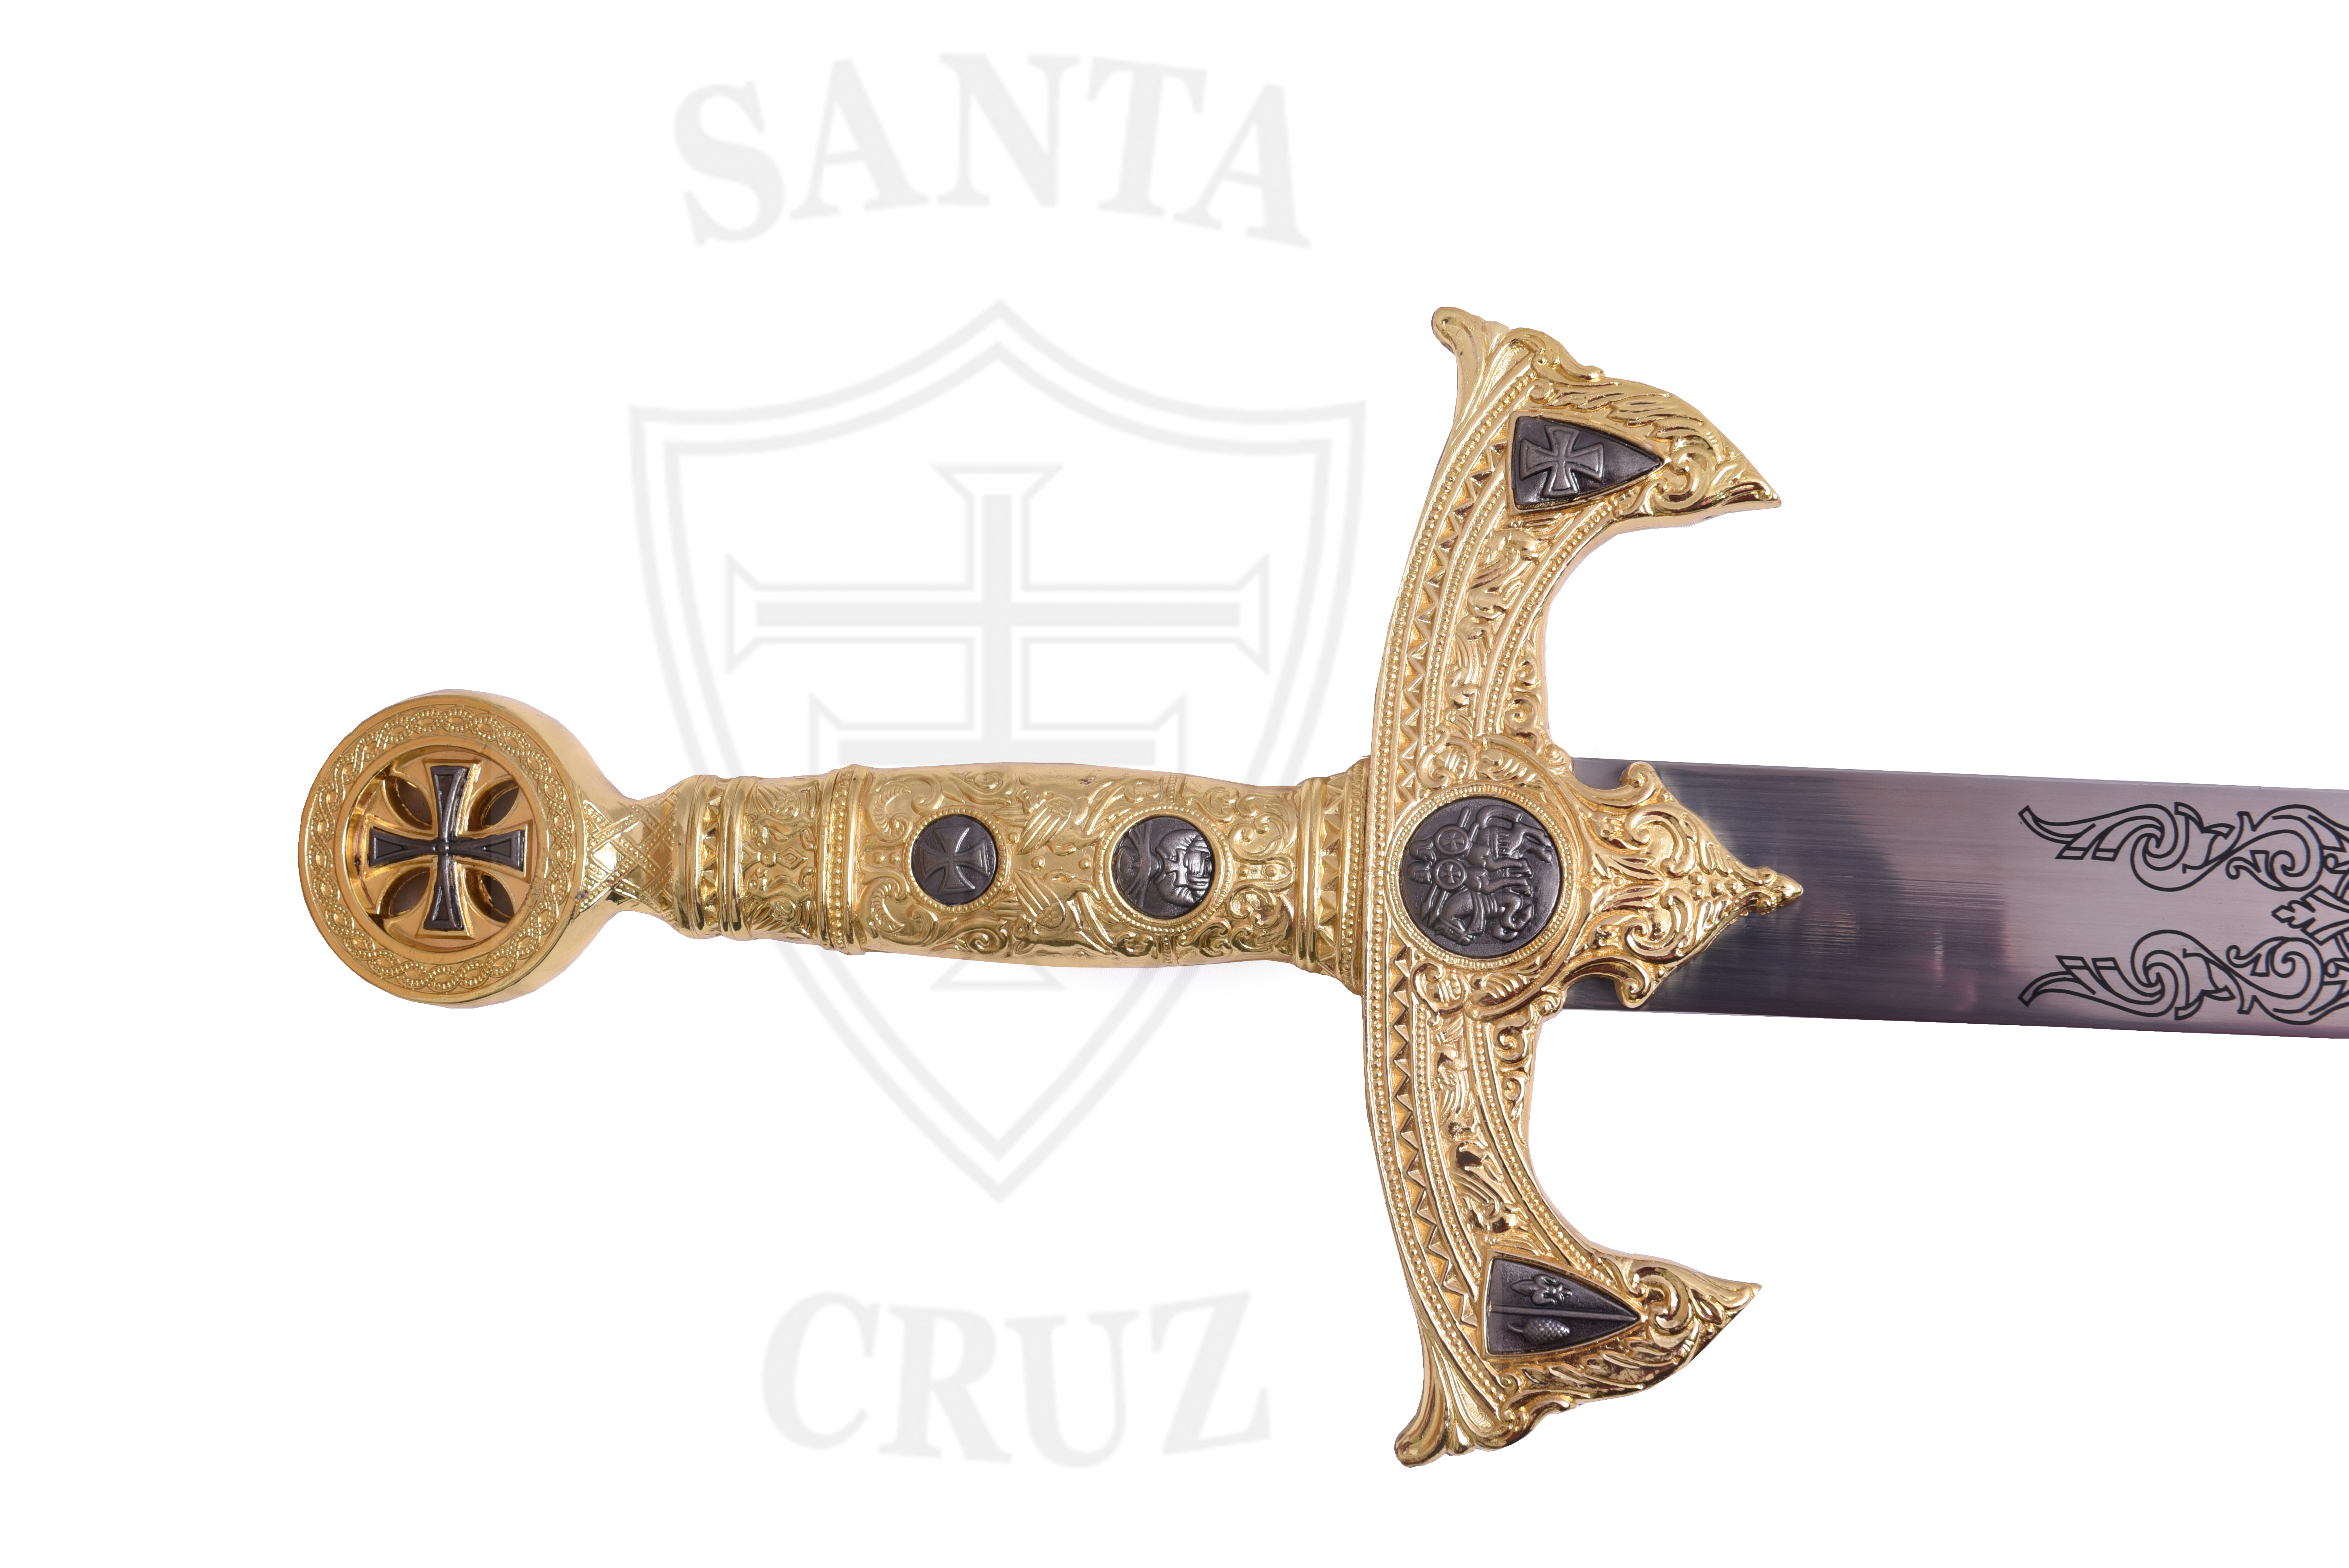 Espada Santa Cruz